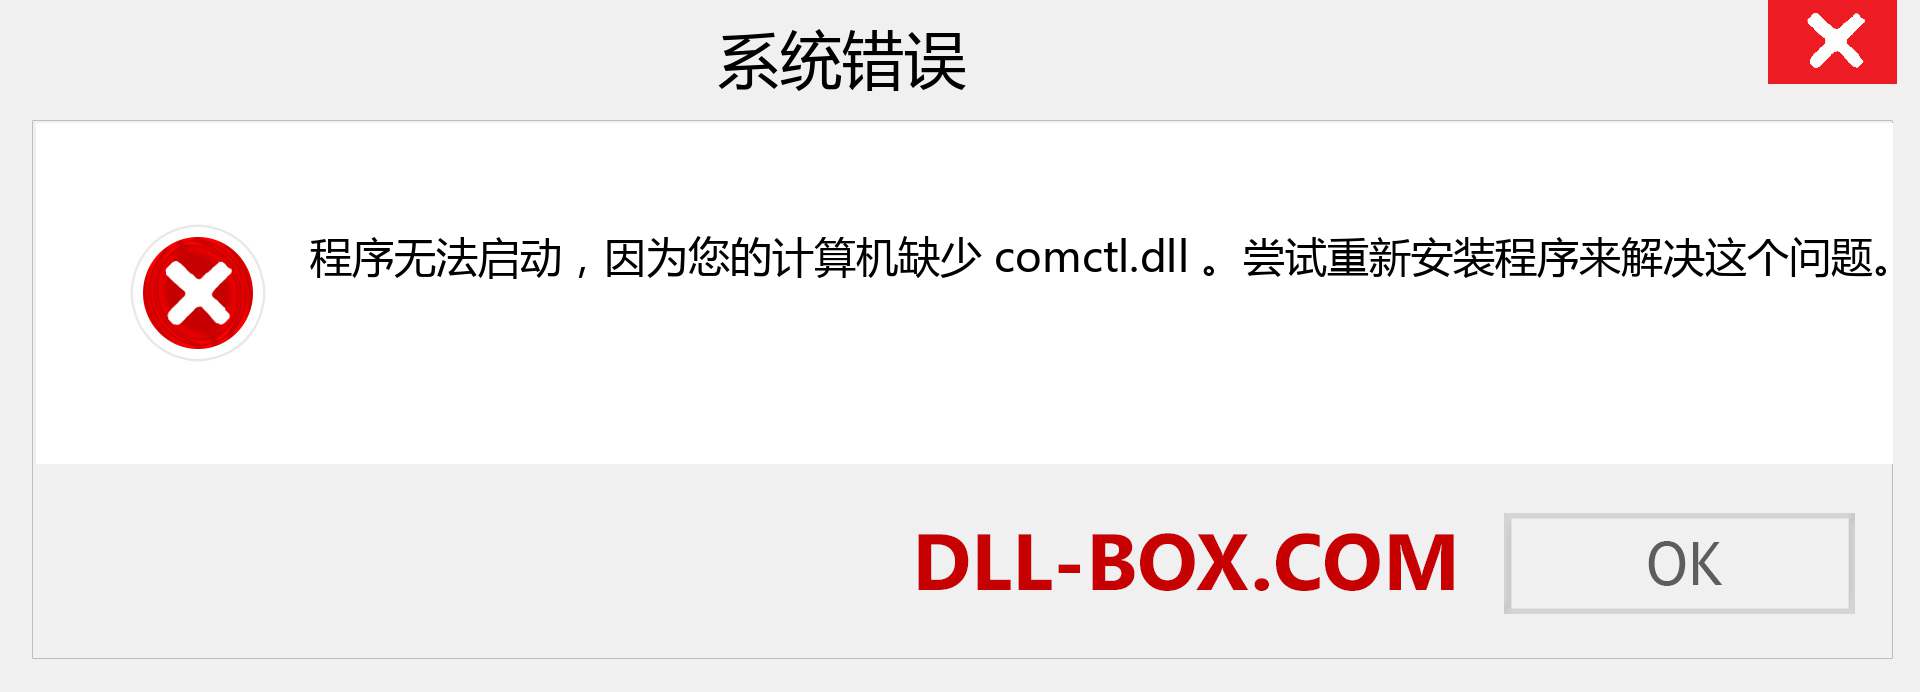 comctl.dll 文件丢失？。 适用于 Windows 7、8、10 的下载 - 修复 Windows、照片、图像上的 comctl dll 丢失错误